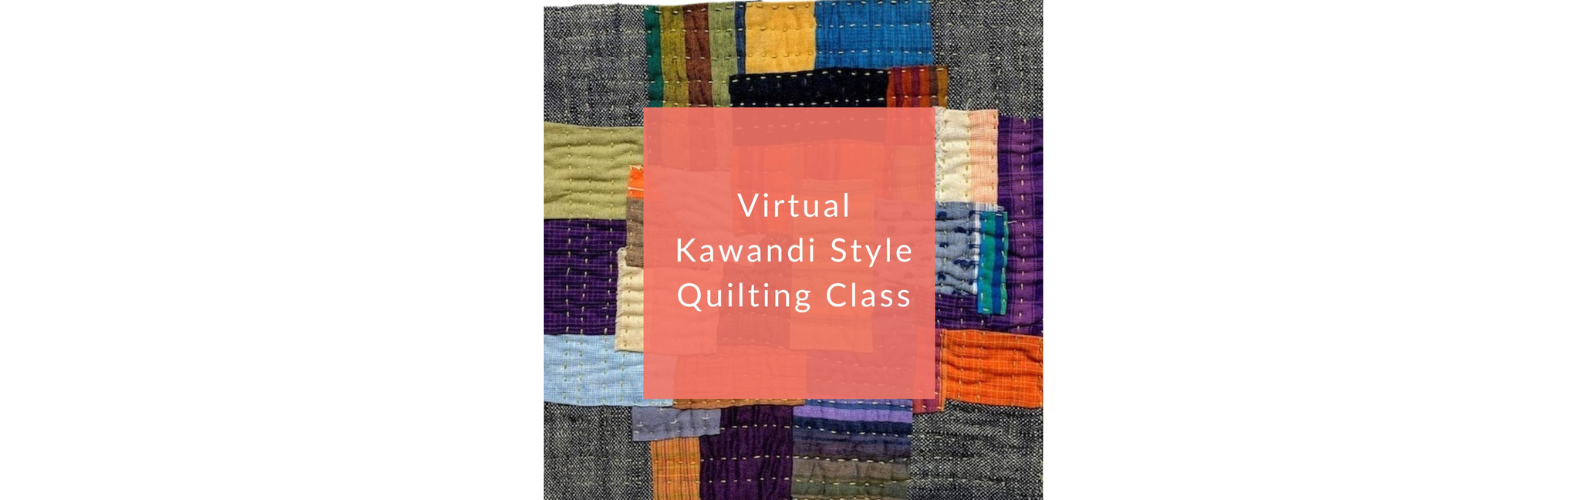 Virtual Kawandi Style Quilting On-Demand Class